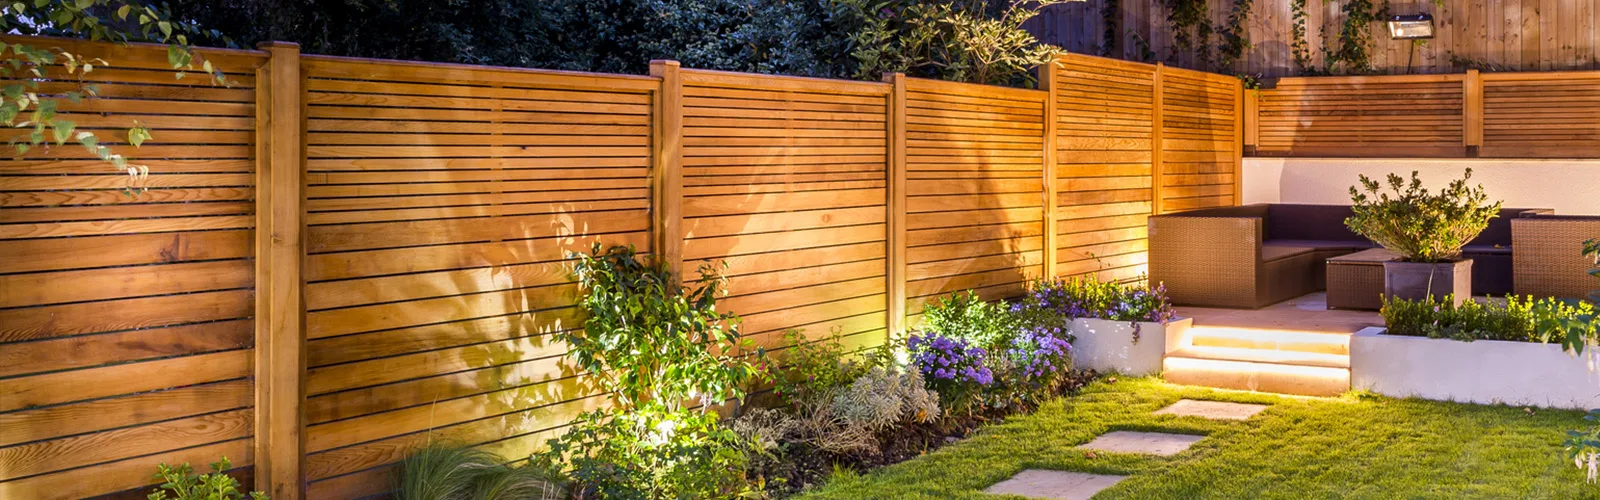 Créer de l'intimité dans son jardin avec une clôture moderne